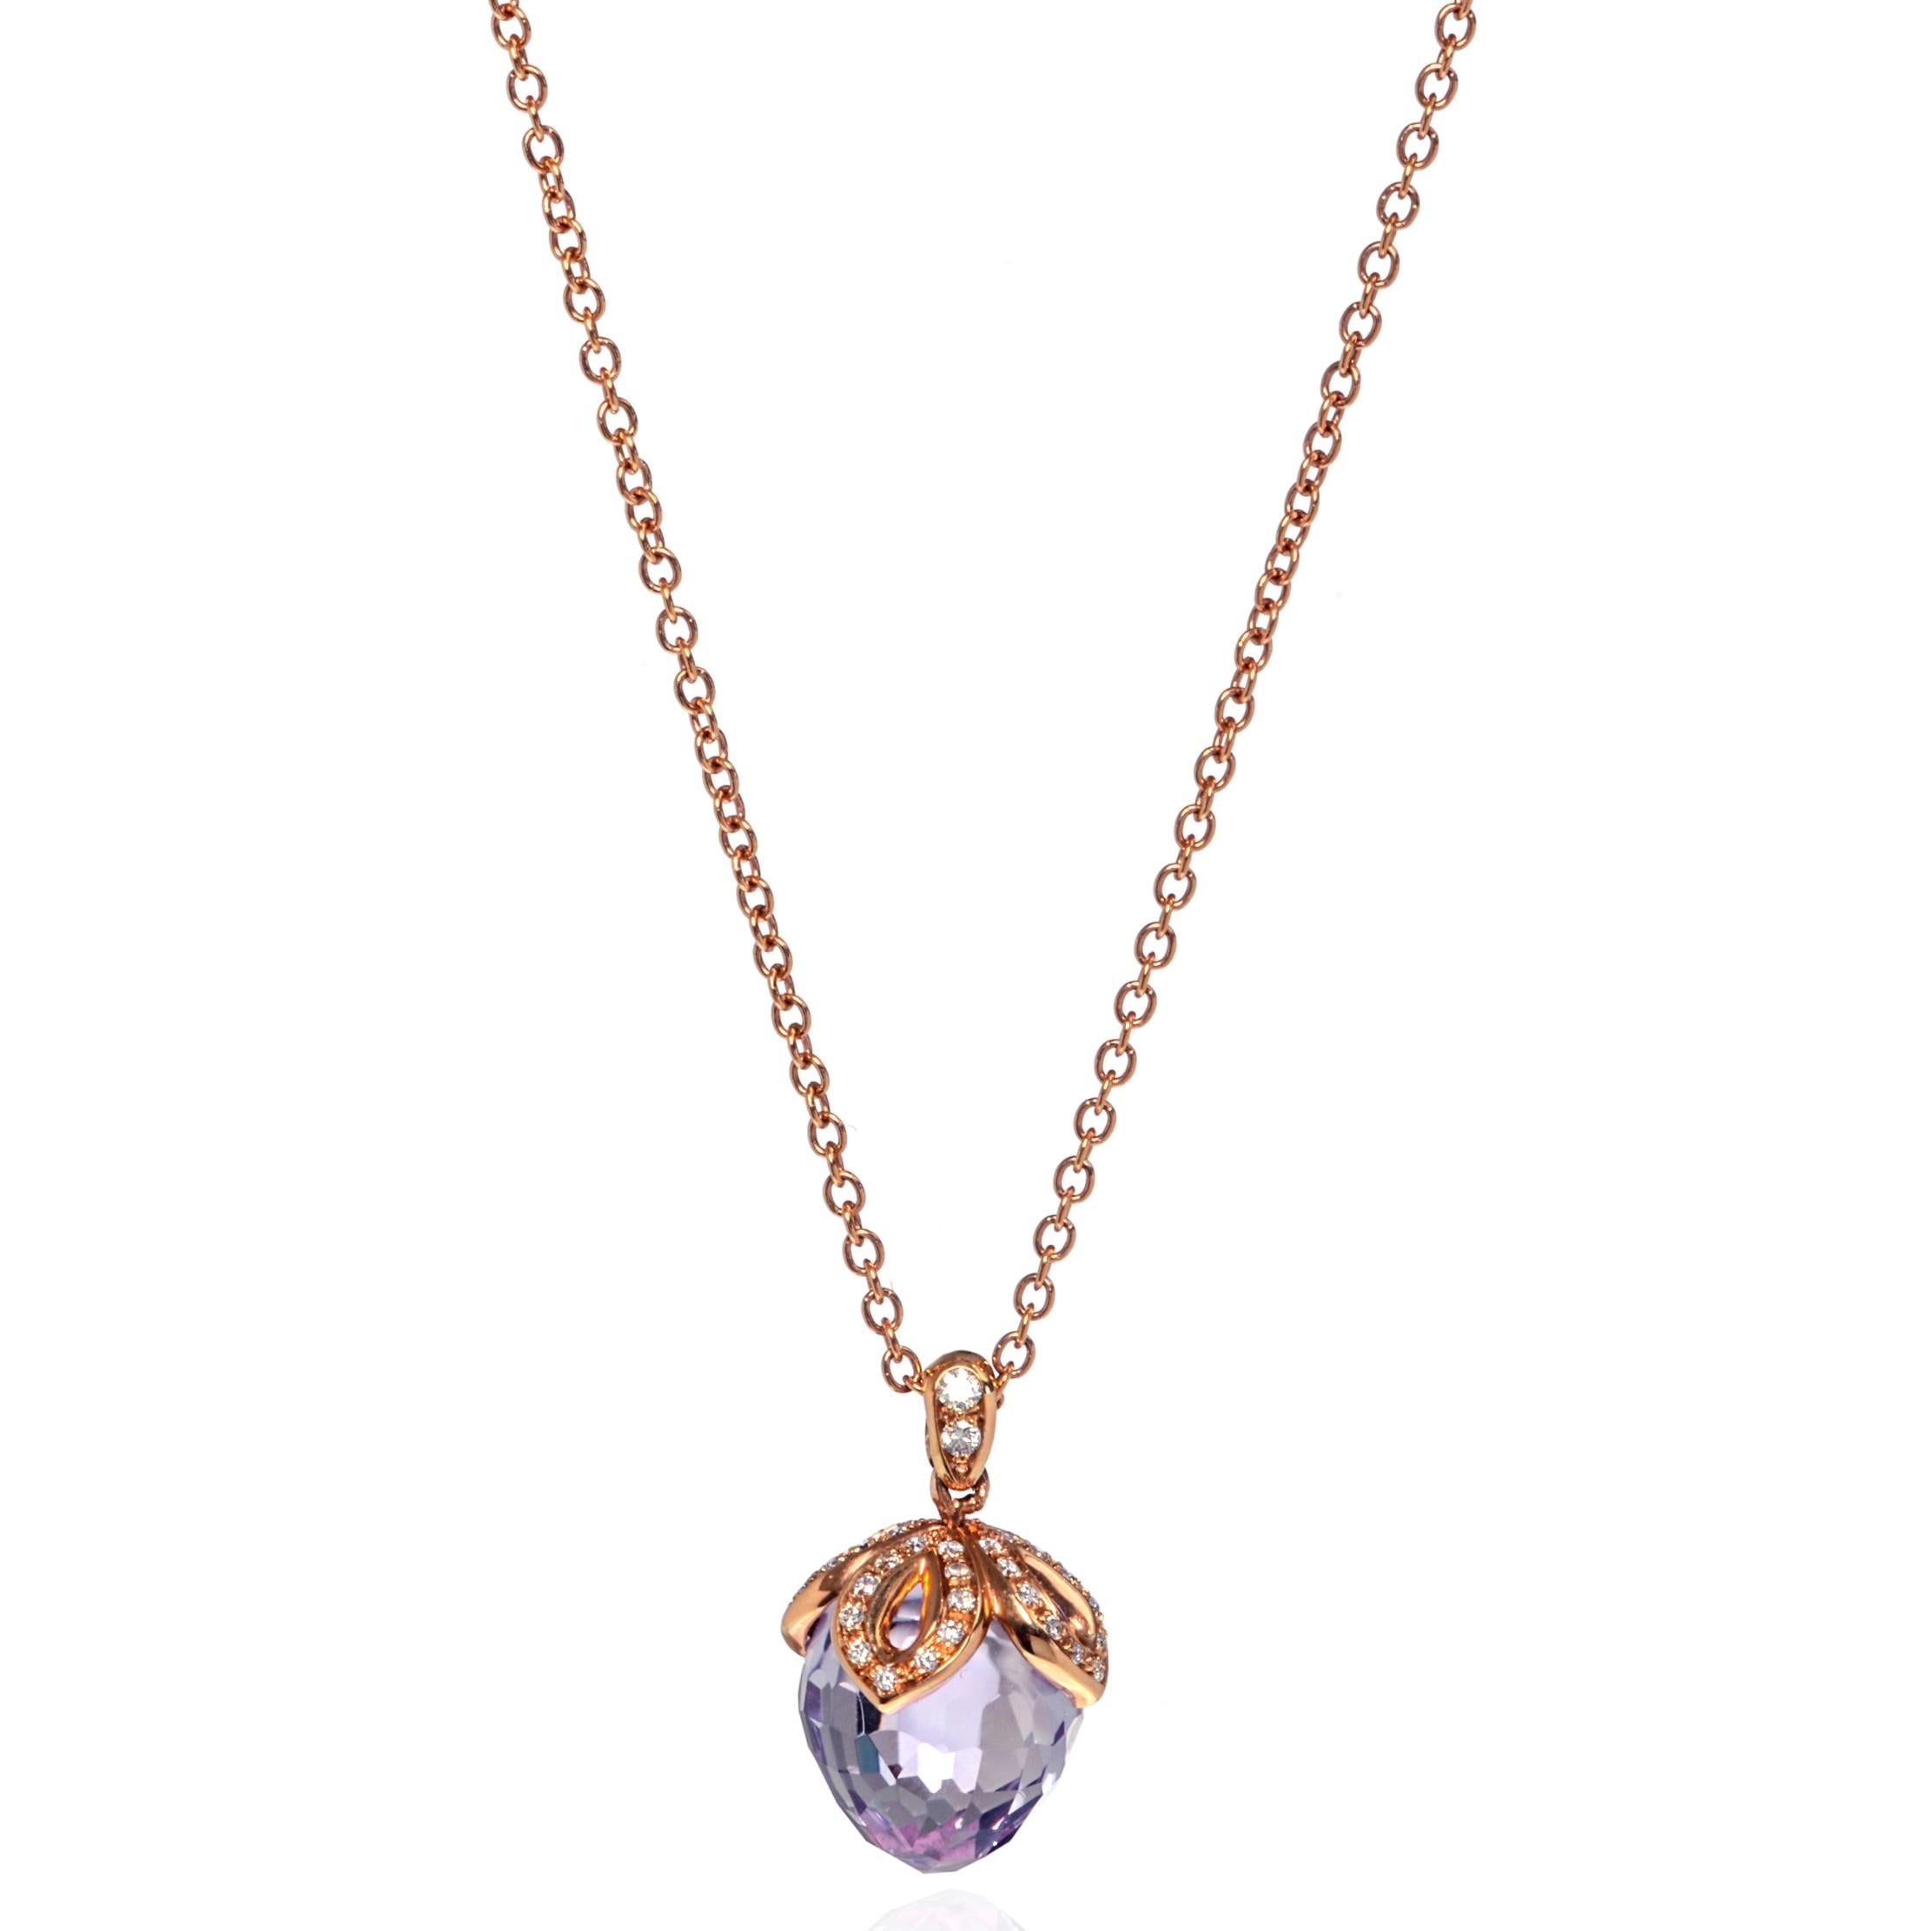 Ce magnifique collier pendentif en améthyste violette et diamant est réalisé en or rose 18 carats. La monture est sertie de minuscules diamants ronds d'une valeur de 0,21cttw. Poids de l'améthyste : 8.55cts. Taille du pendentif : 16,00 mm. Longueur